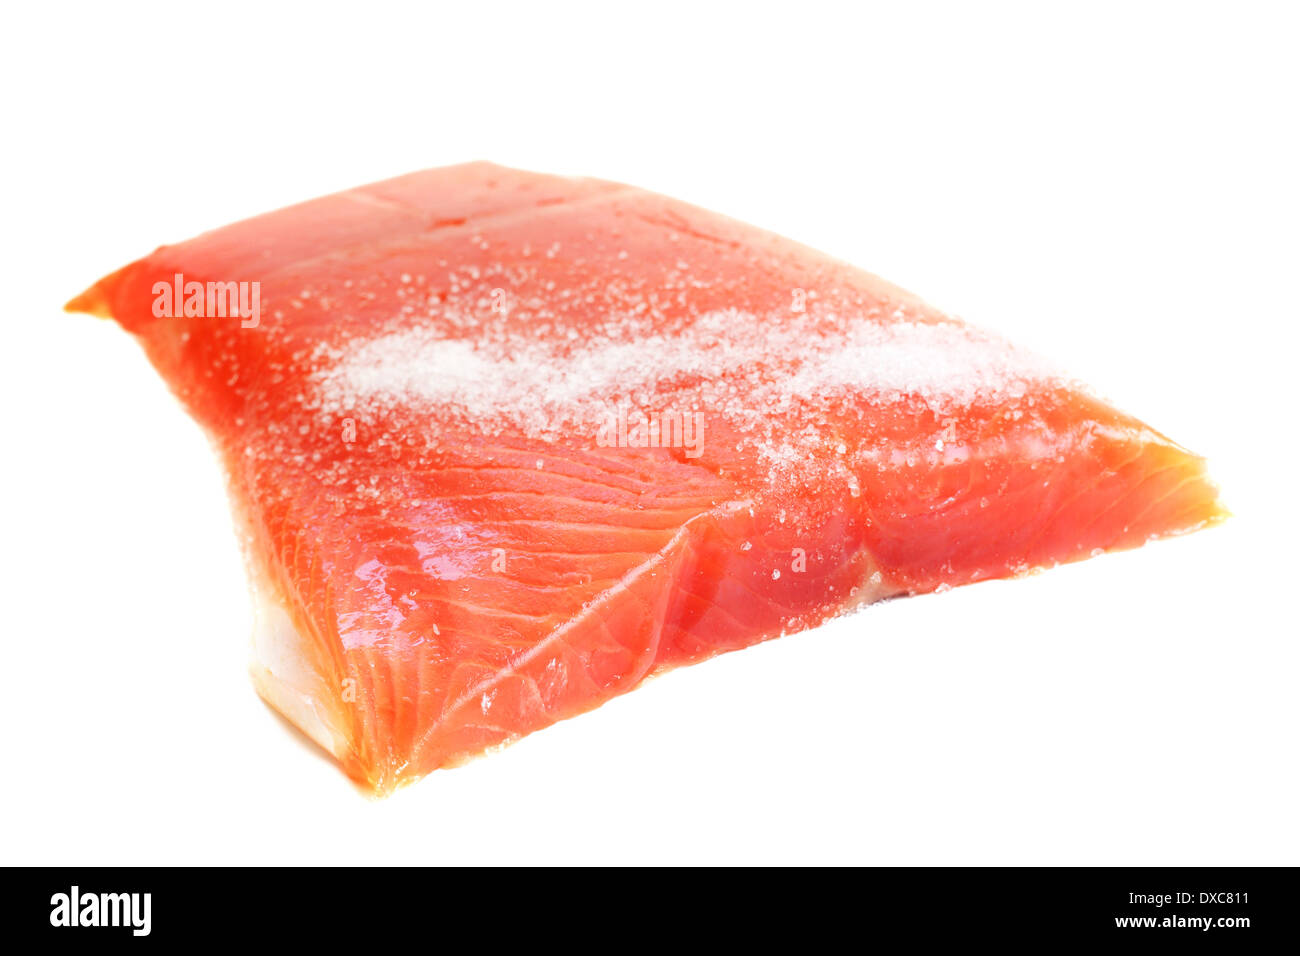 Salmone salato crudo filetto isolati su sfondo bianco Foto Stock